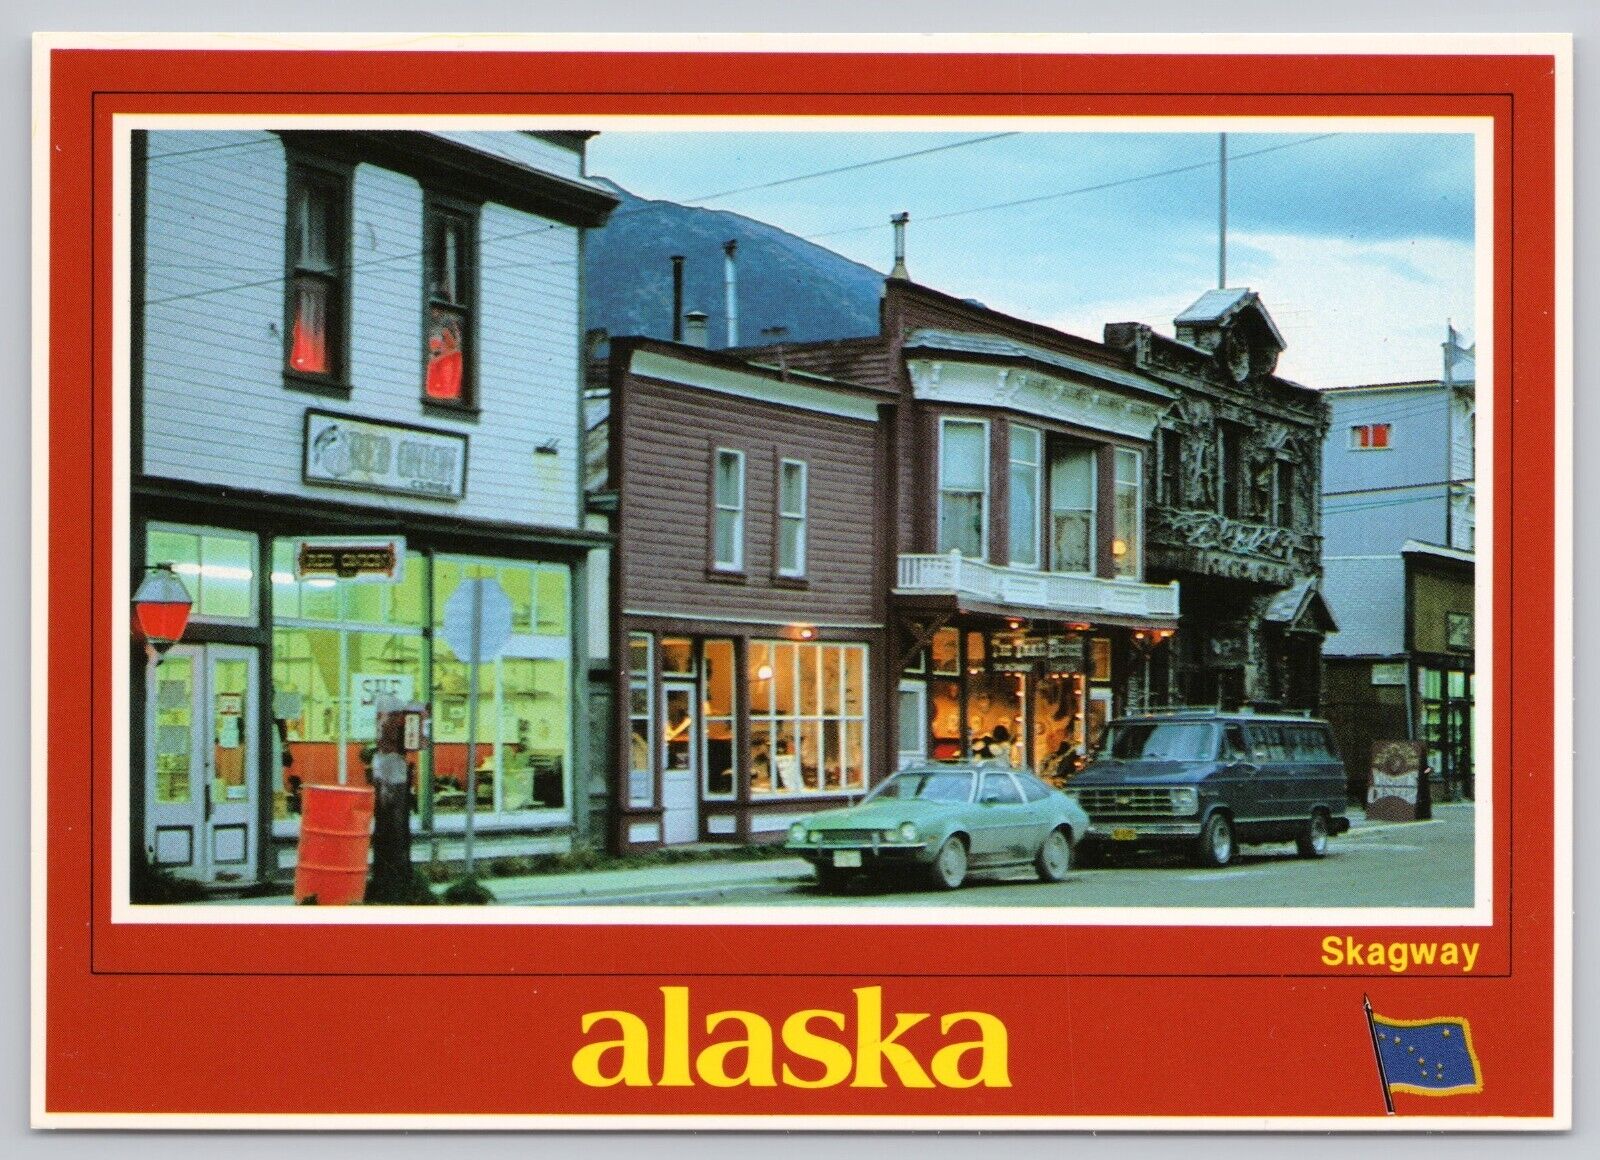 Skagway Alaska, Street View Old Cars Shops Lights at Dusk, Vintage Postcard